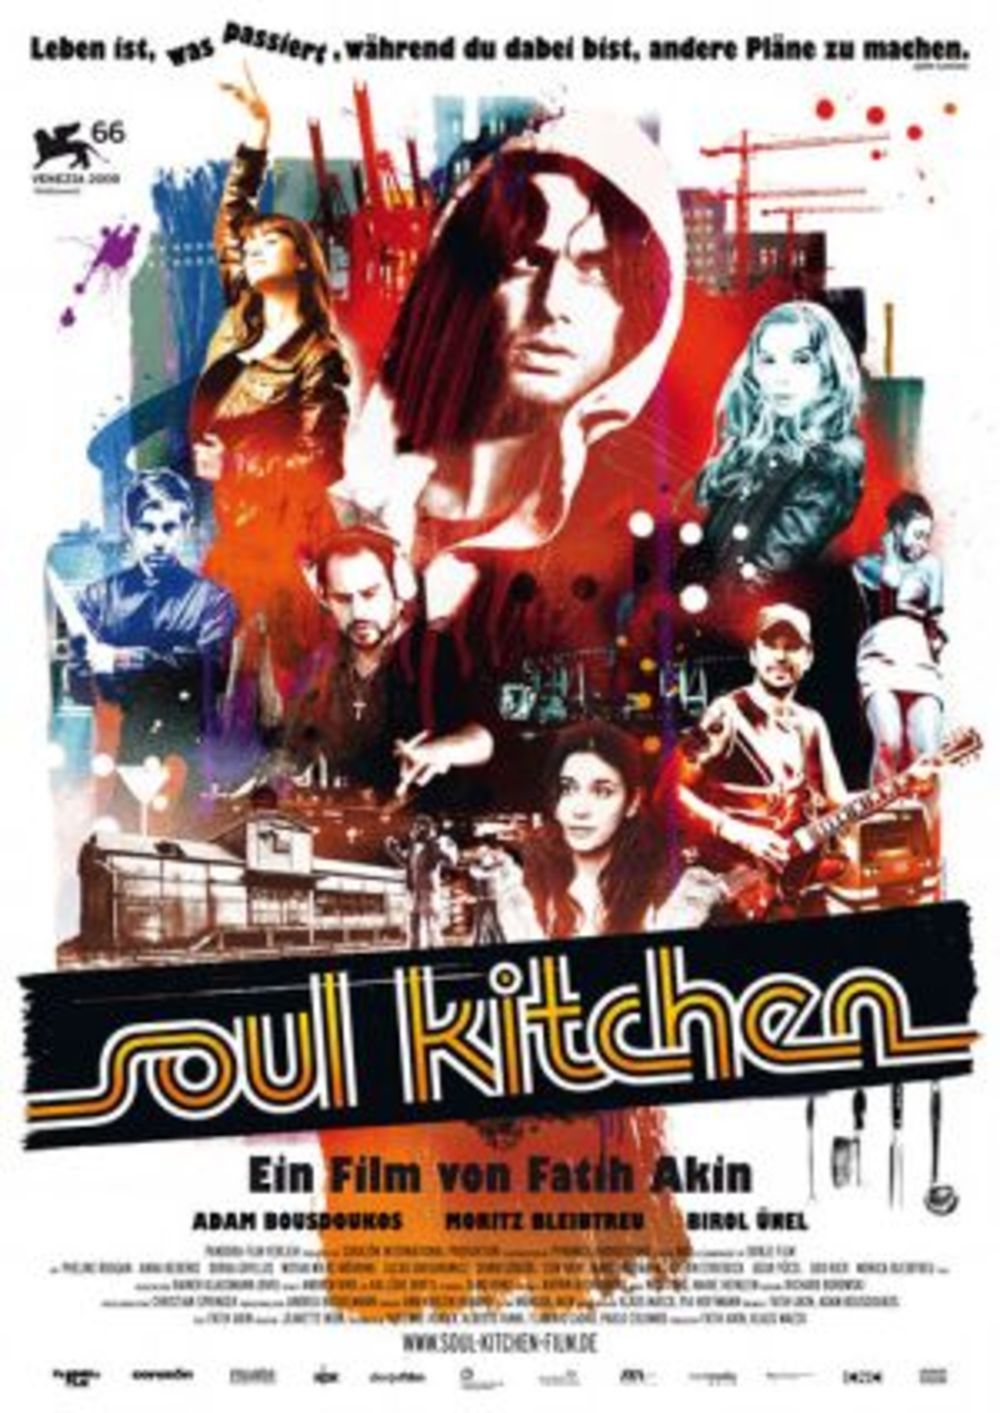 Nakon što je prikazan na Kustendorf festivalu, najgledaniji film Festivala autorskog filma Soul Kitchen, od 21. januara naći će se i na redovnom repertoaru bioskopa Kolosej